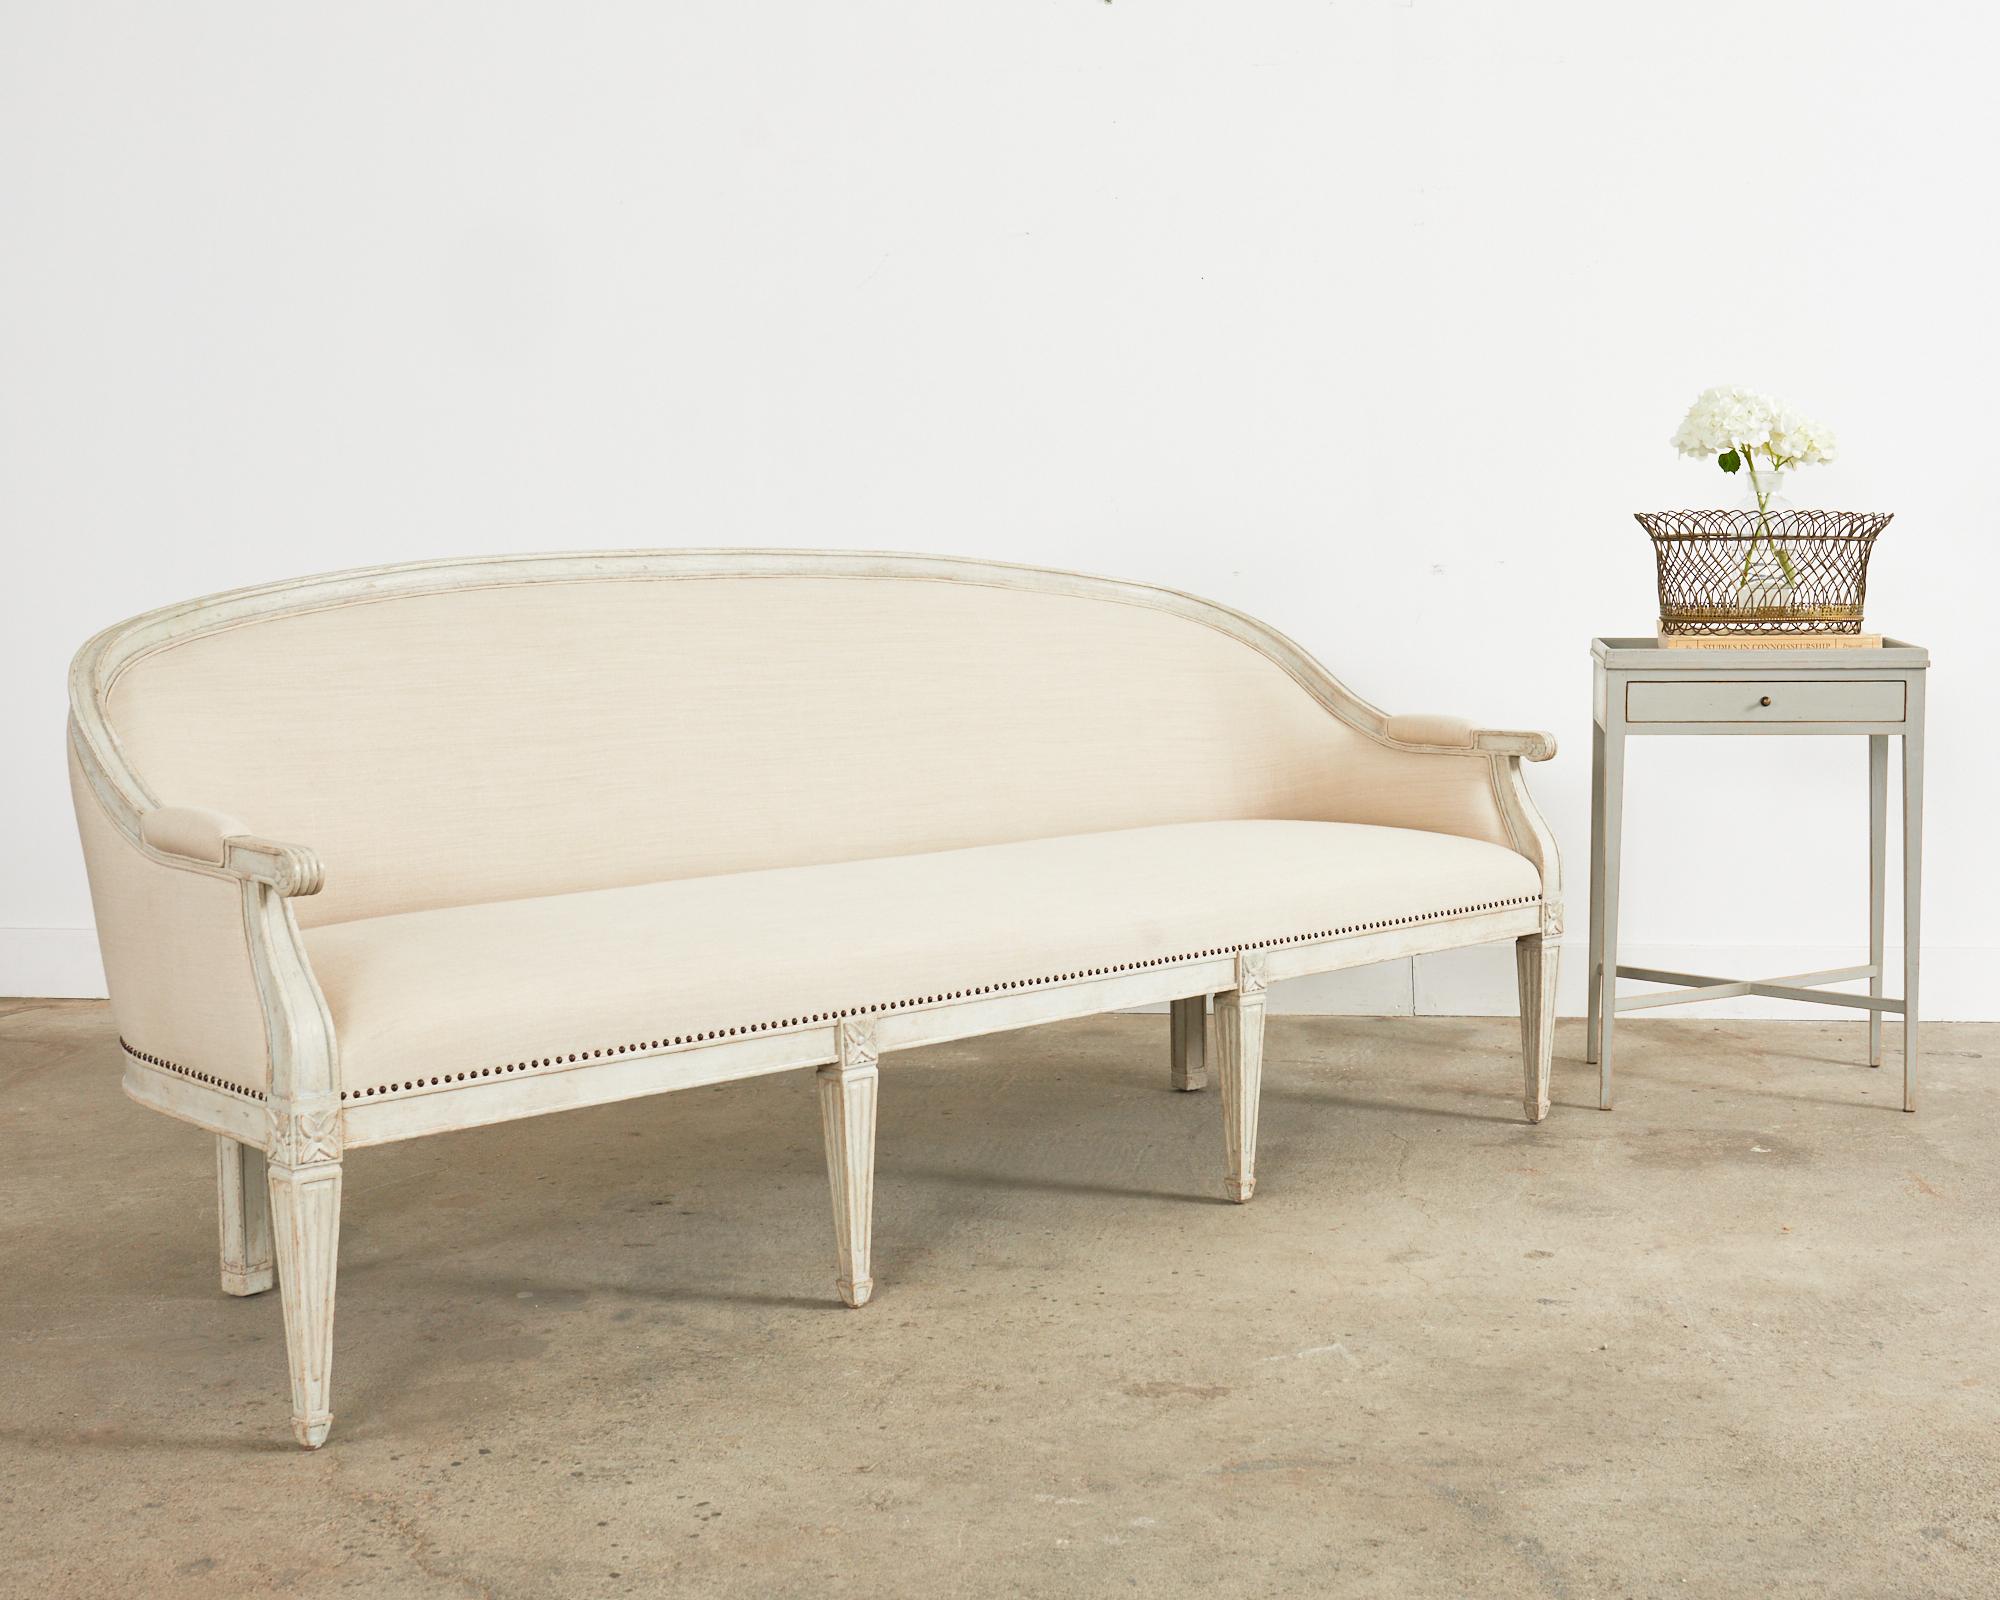 Erhabenes Cabrio-Sofa, Sofa oder Kanapee nach Maß im neoklassischen schwedischen Gustavianischen Stil. Das Sofa verfügt über einen anmutig geschwungenen Hartholzrahmen im Cabriole-Stil mit einer absichtlich gealterten, gealterten, lackierten